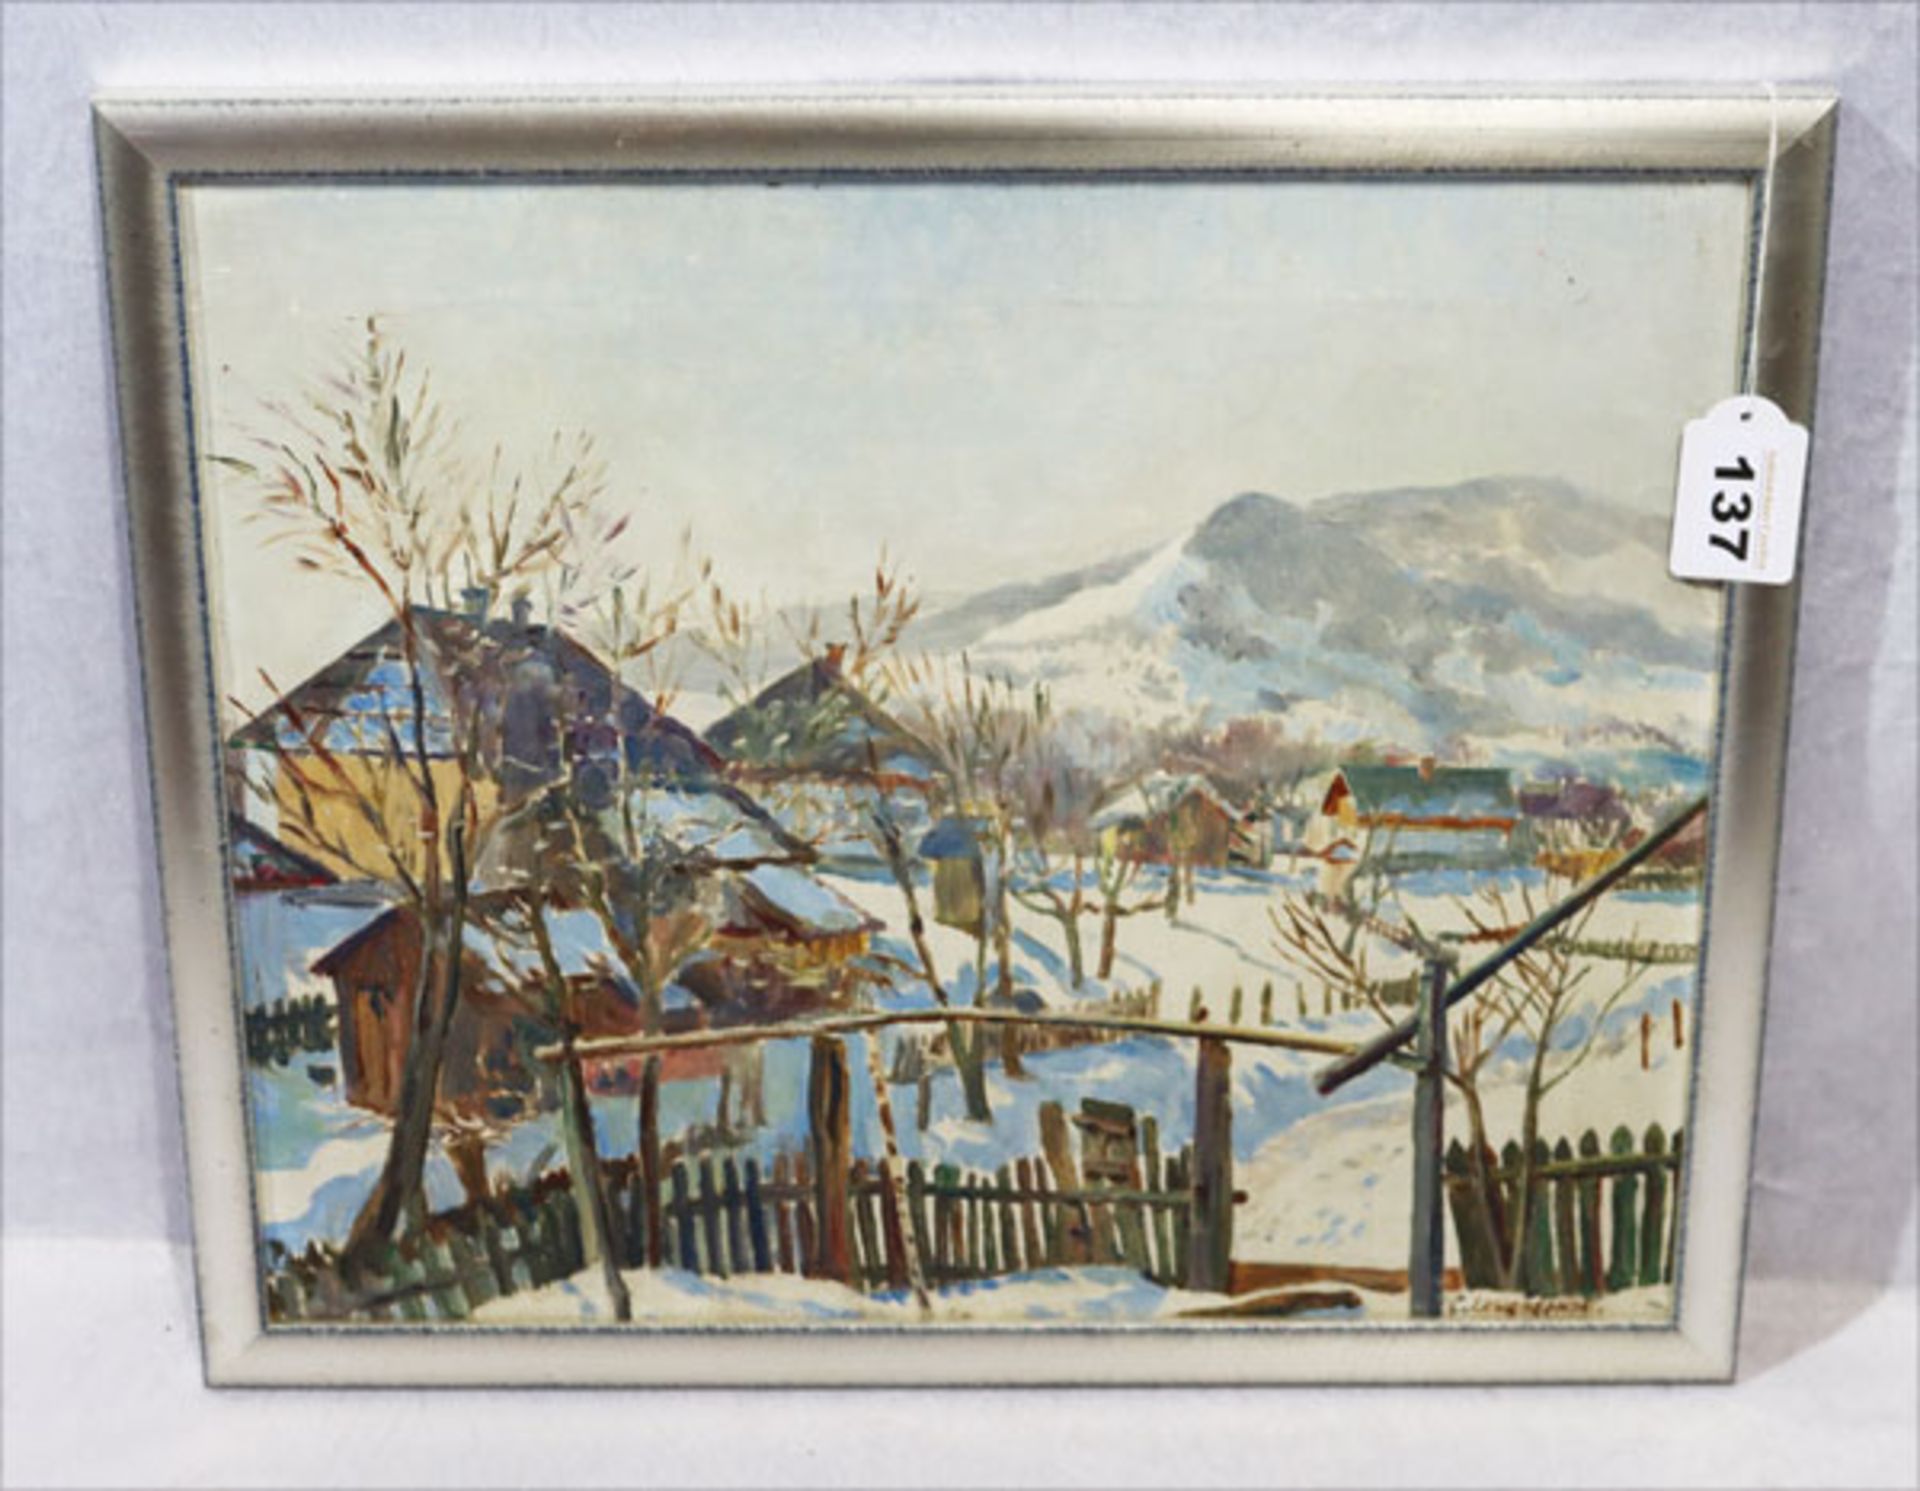 Gemälde ÖL/Malkarton 'Winterlandschaft mit Dorf', signiert C. Lewandowski, gerahmt, Rahmen leicht